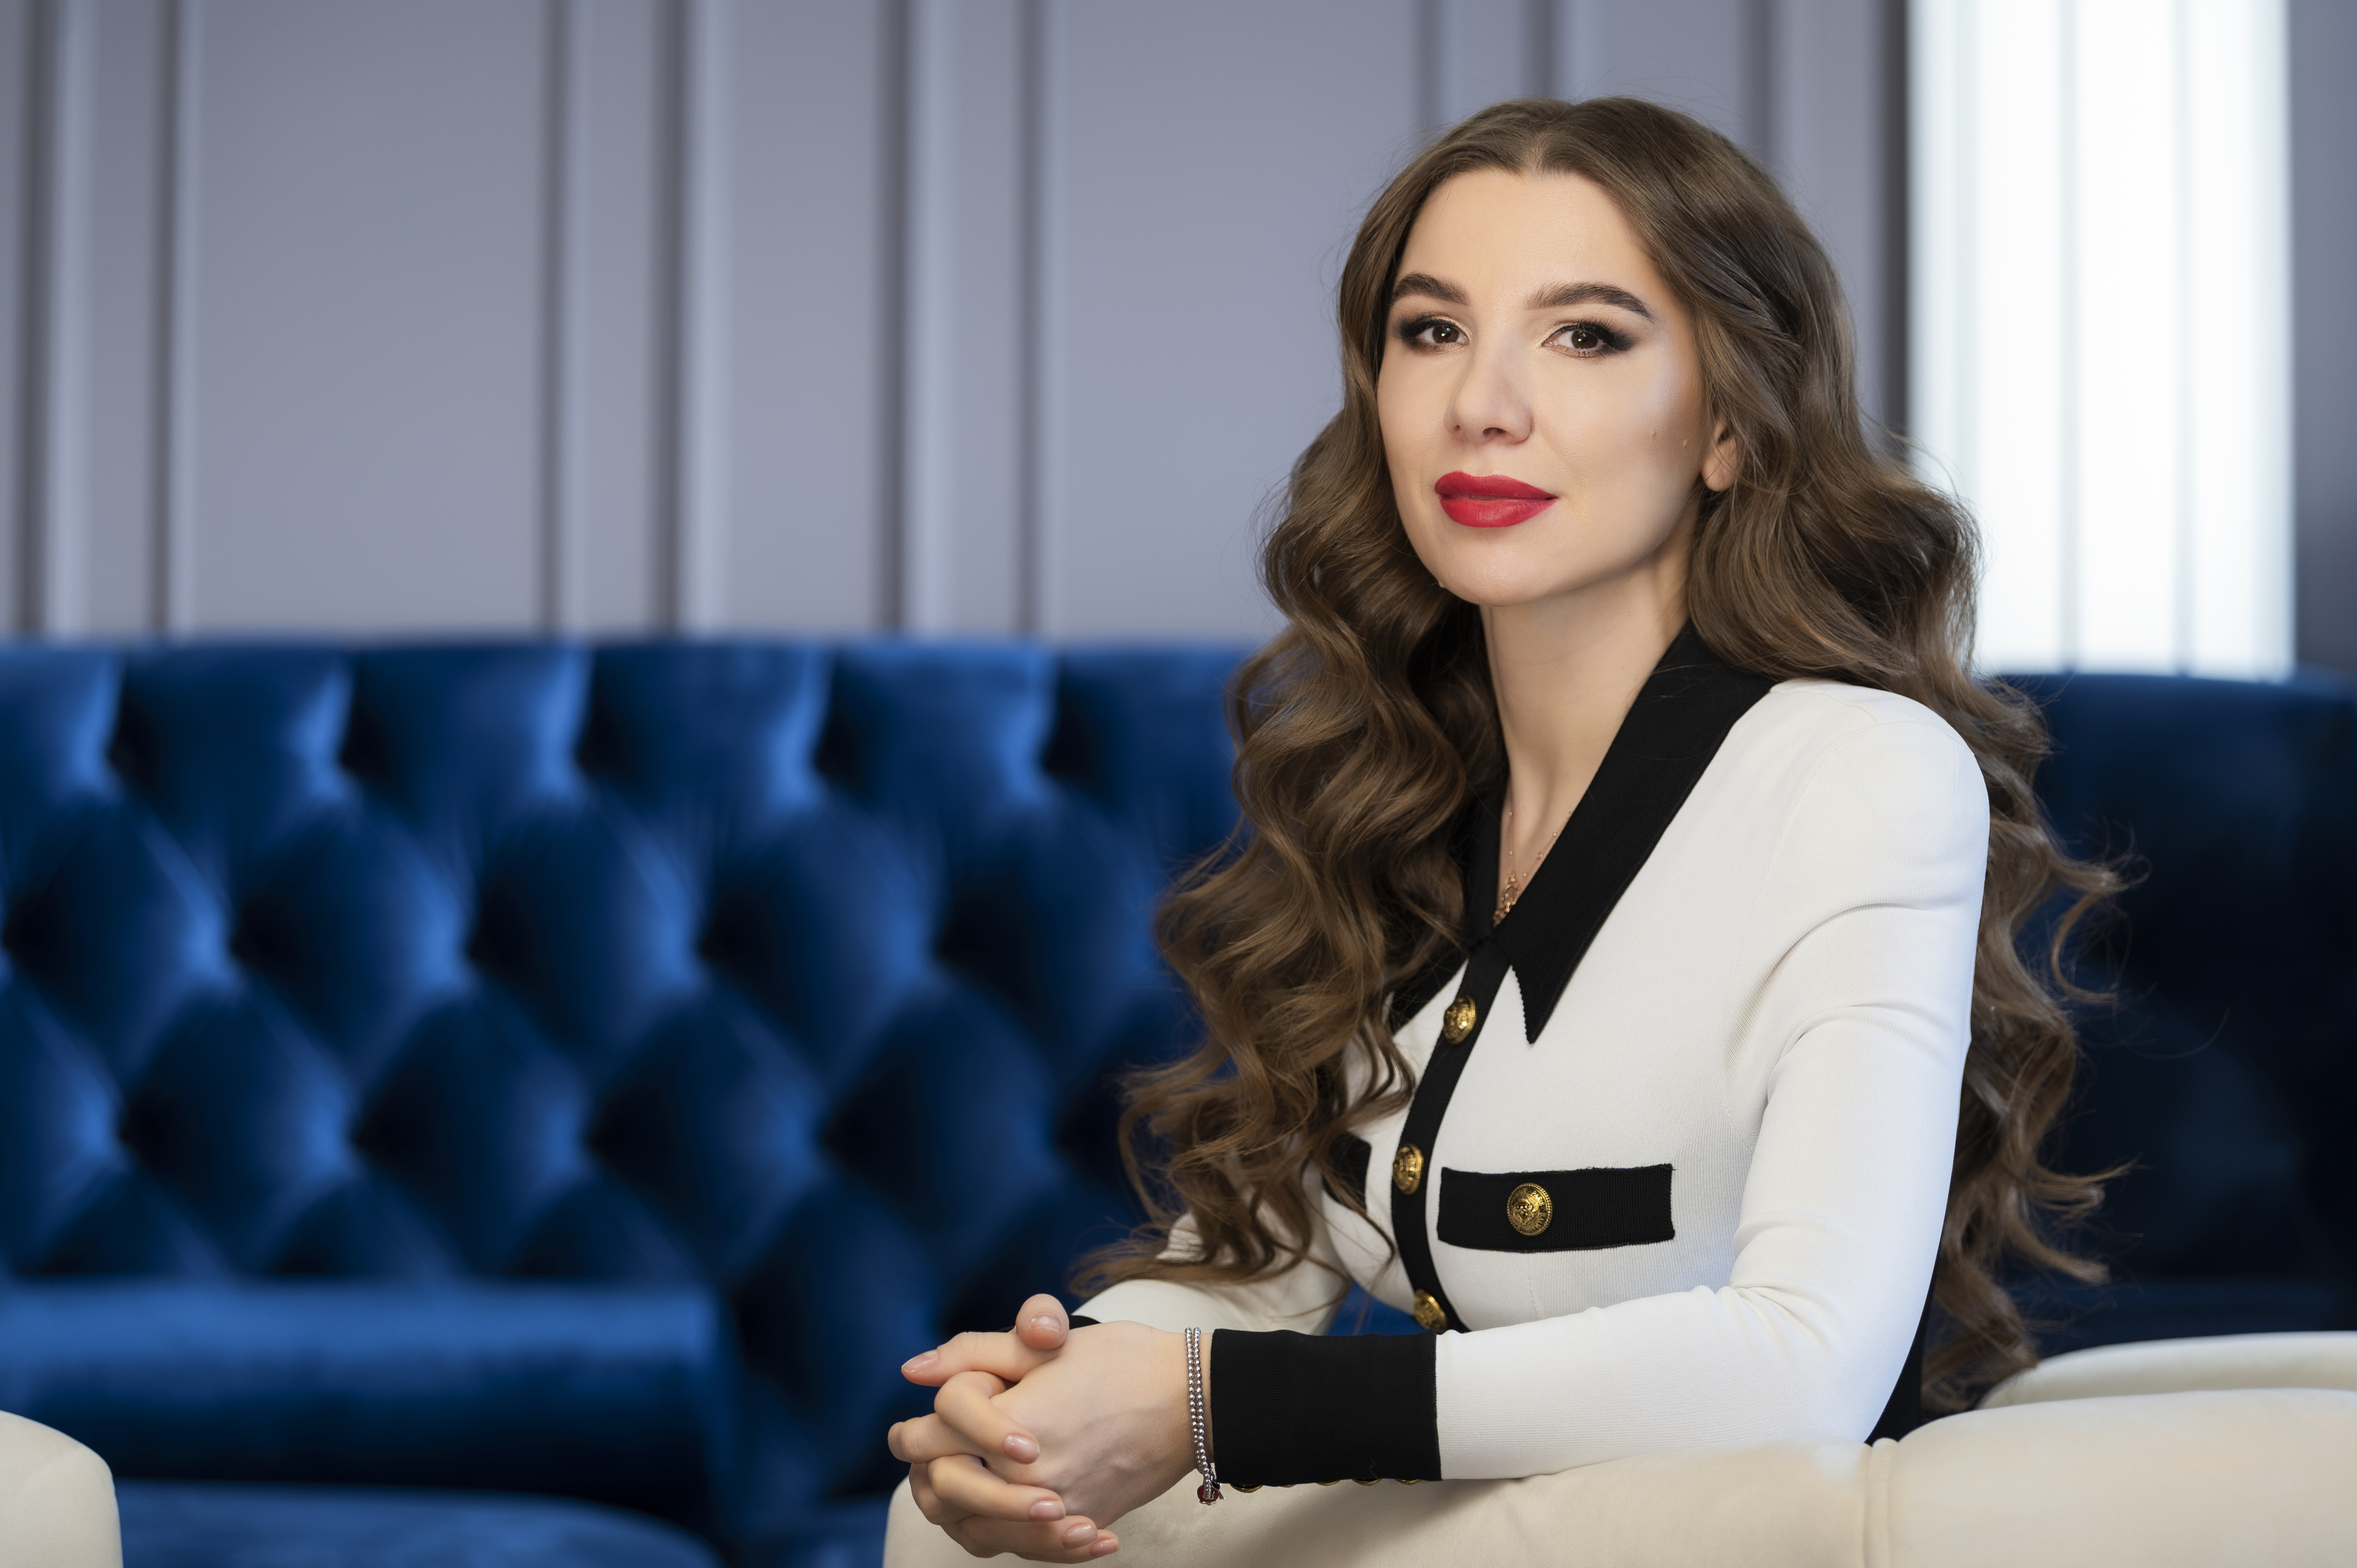 Алена Дегрик Шевцова номинирована как лучший CEO финансового сектора по версии FinAwards 2021